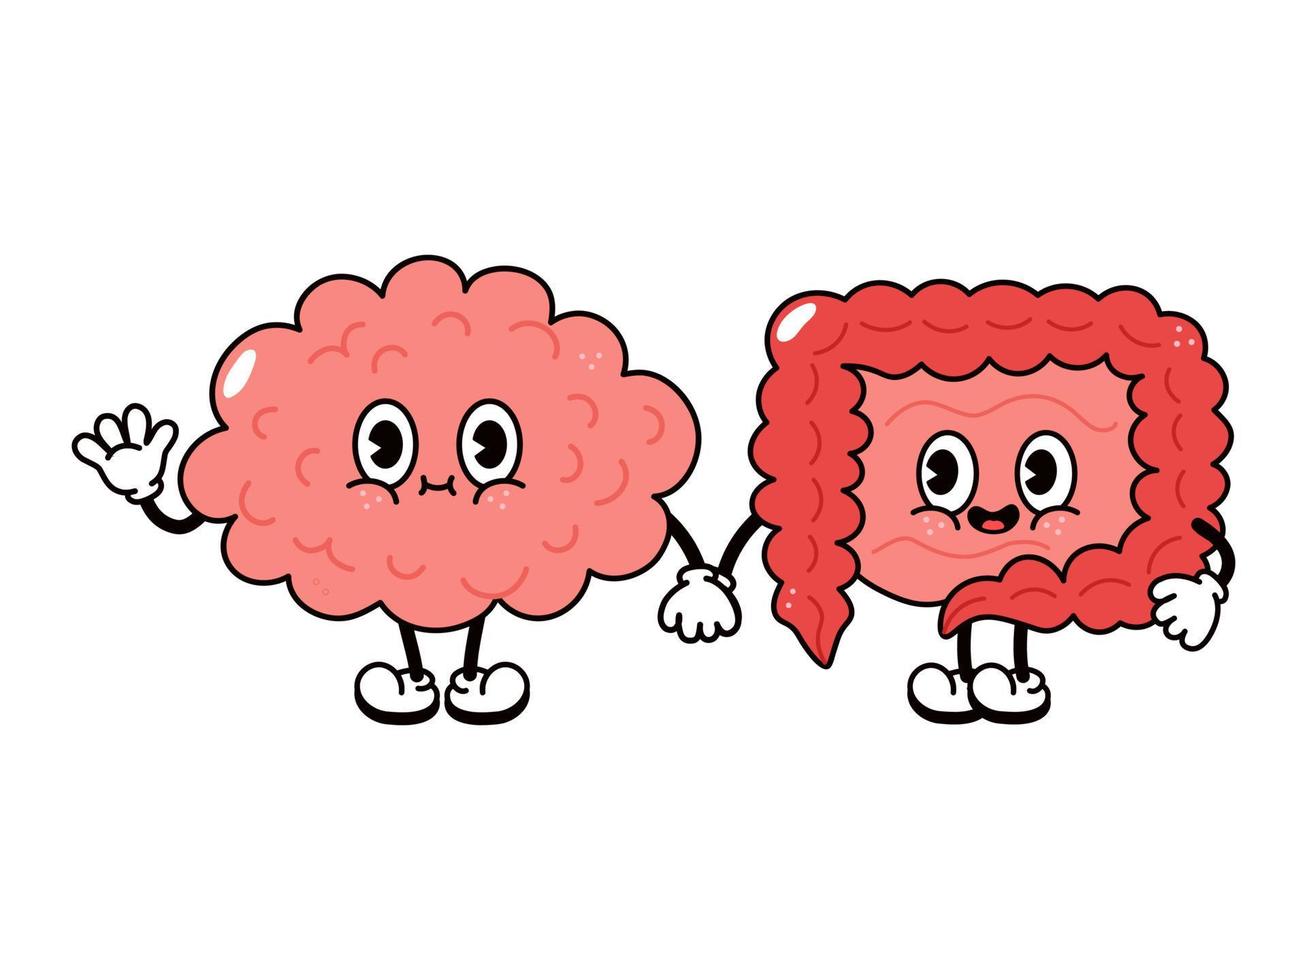 personnage mignon et drôle de cerveau et d'intestins heureux. personnages de kawaii de dessin animé dessinés à la main de vecteur, icône d'illustration. concept d'amis du cerveau et des intestins de dessin animé drôle vecteur